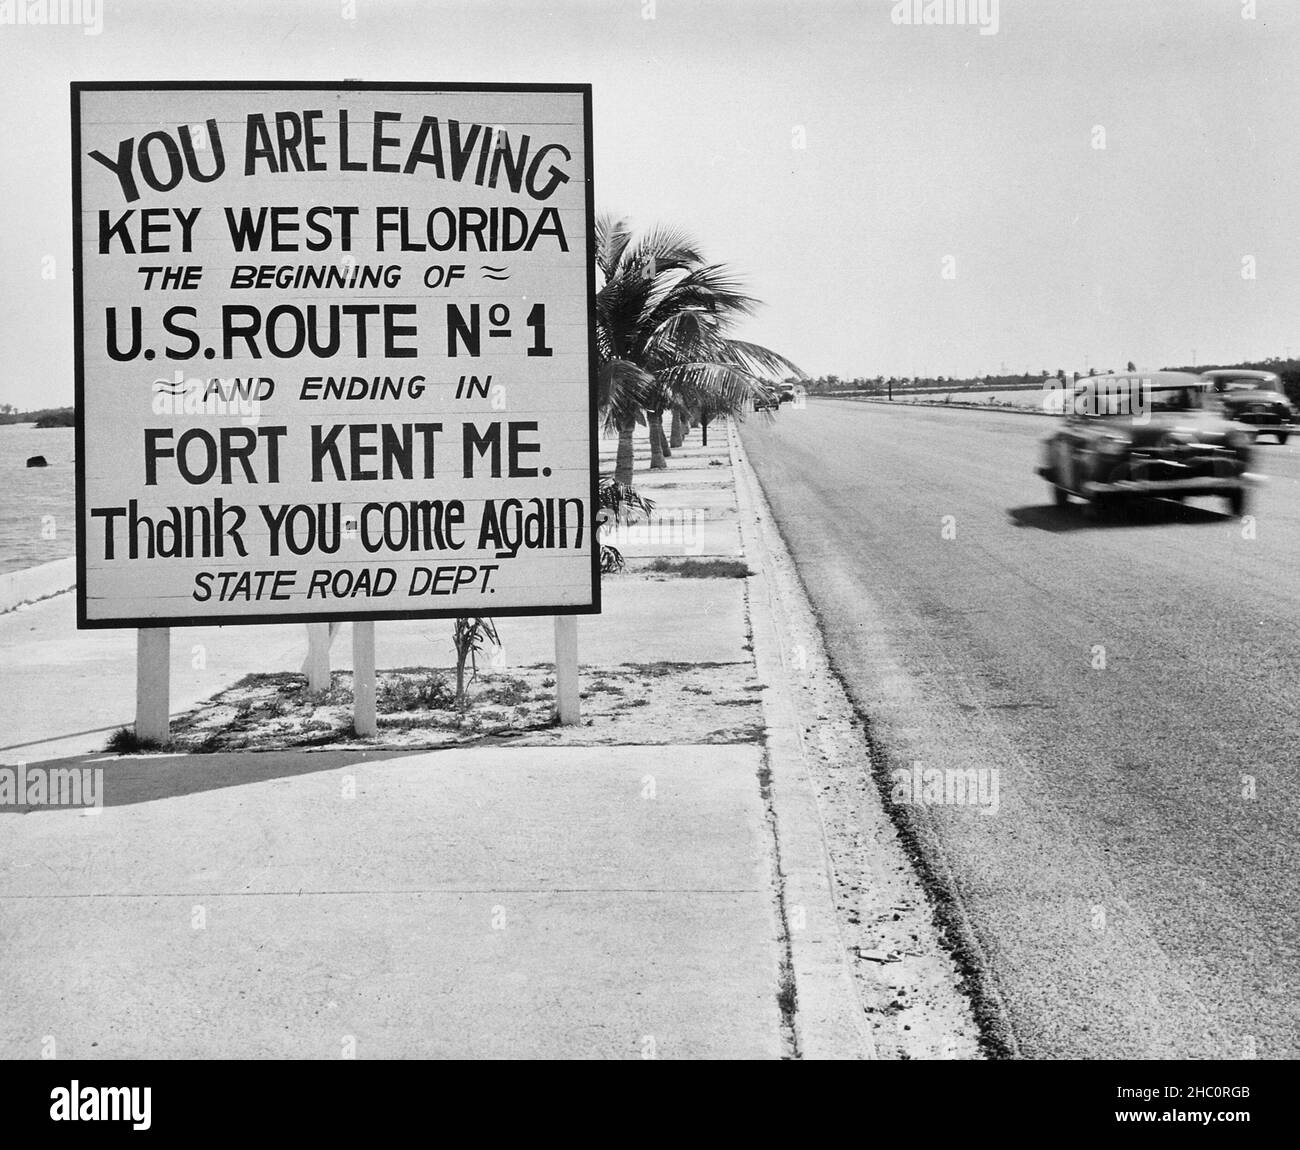 Fotografia di un cartello stradale lungo l'autostrada a Key West, Florida, che annuncia l'inizio della US Route 1 a Fort Kent, Maine - Marzo 1951 Foto Stock